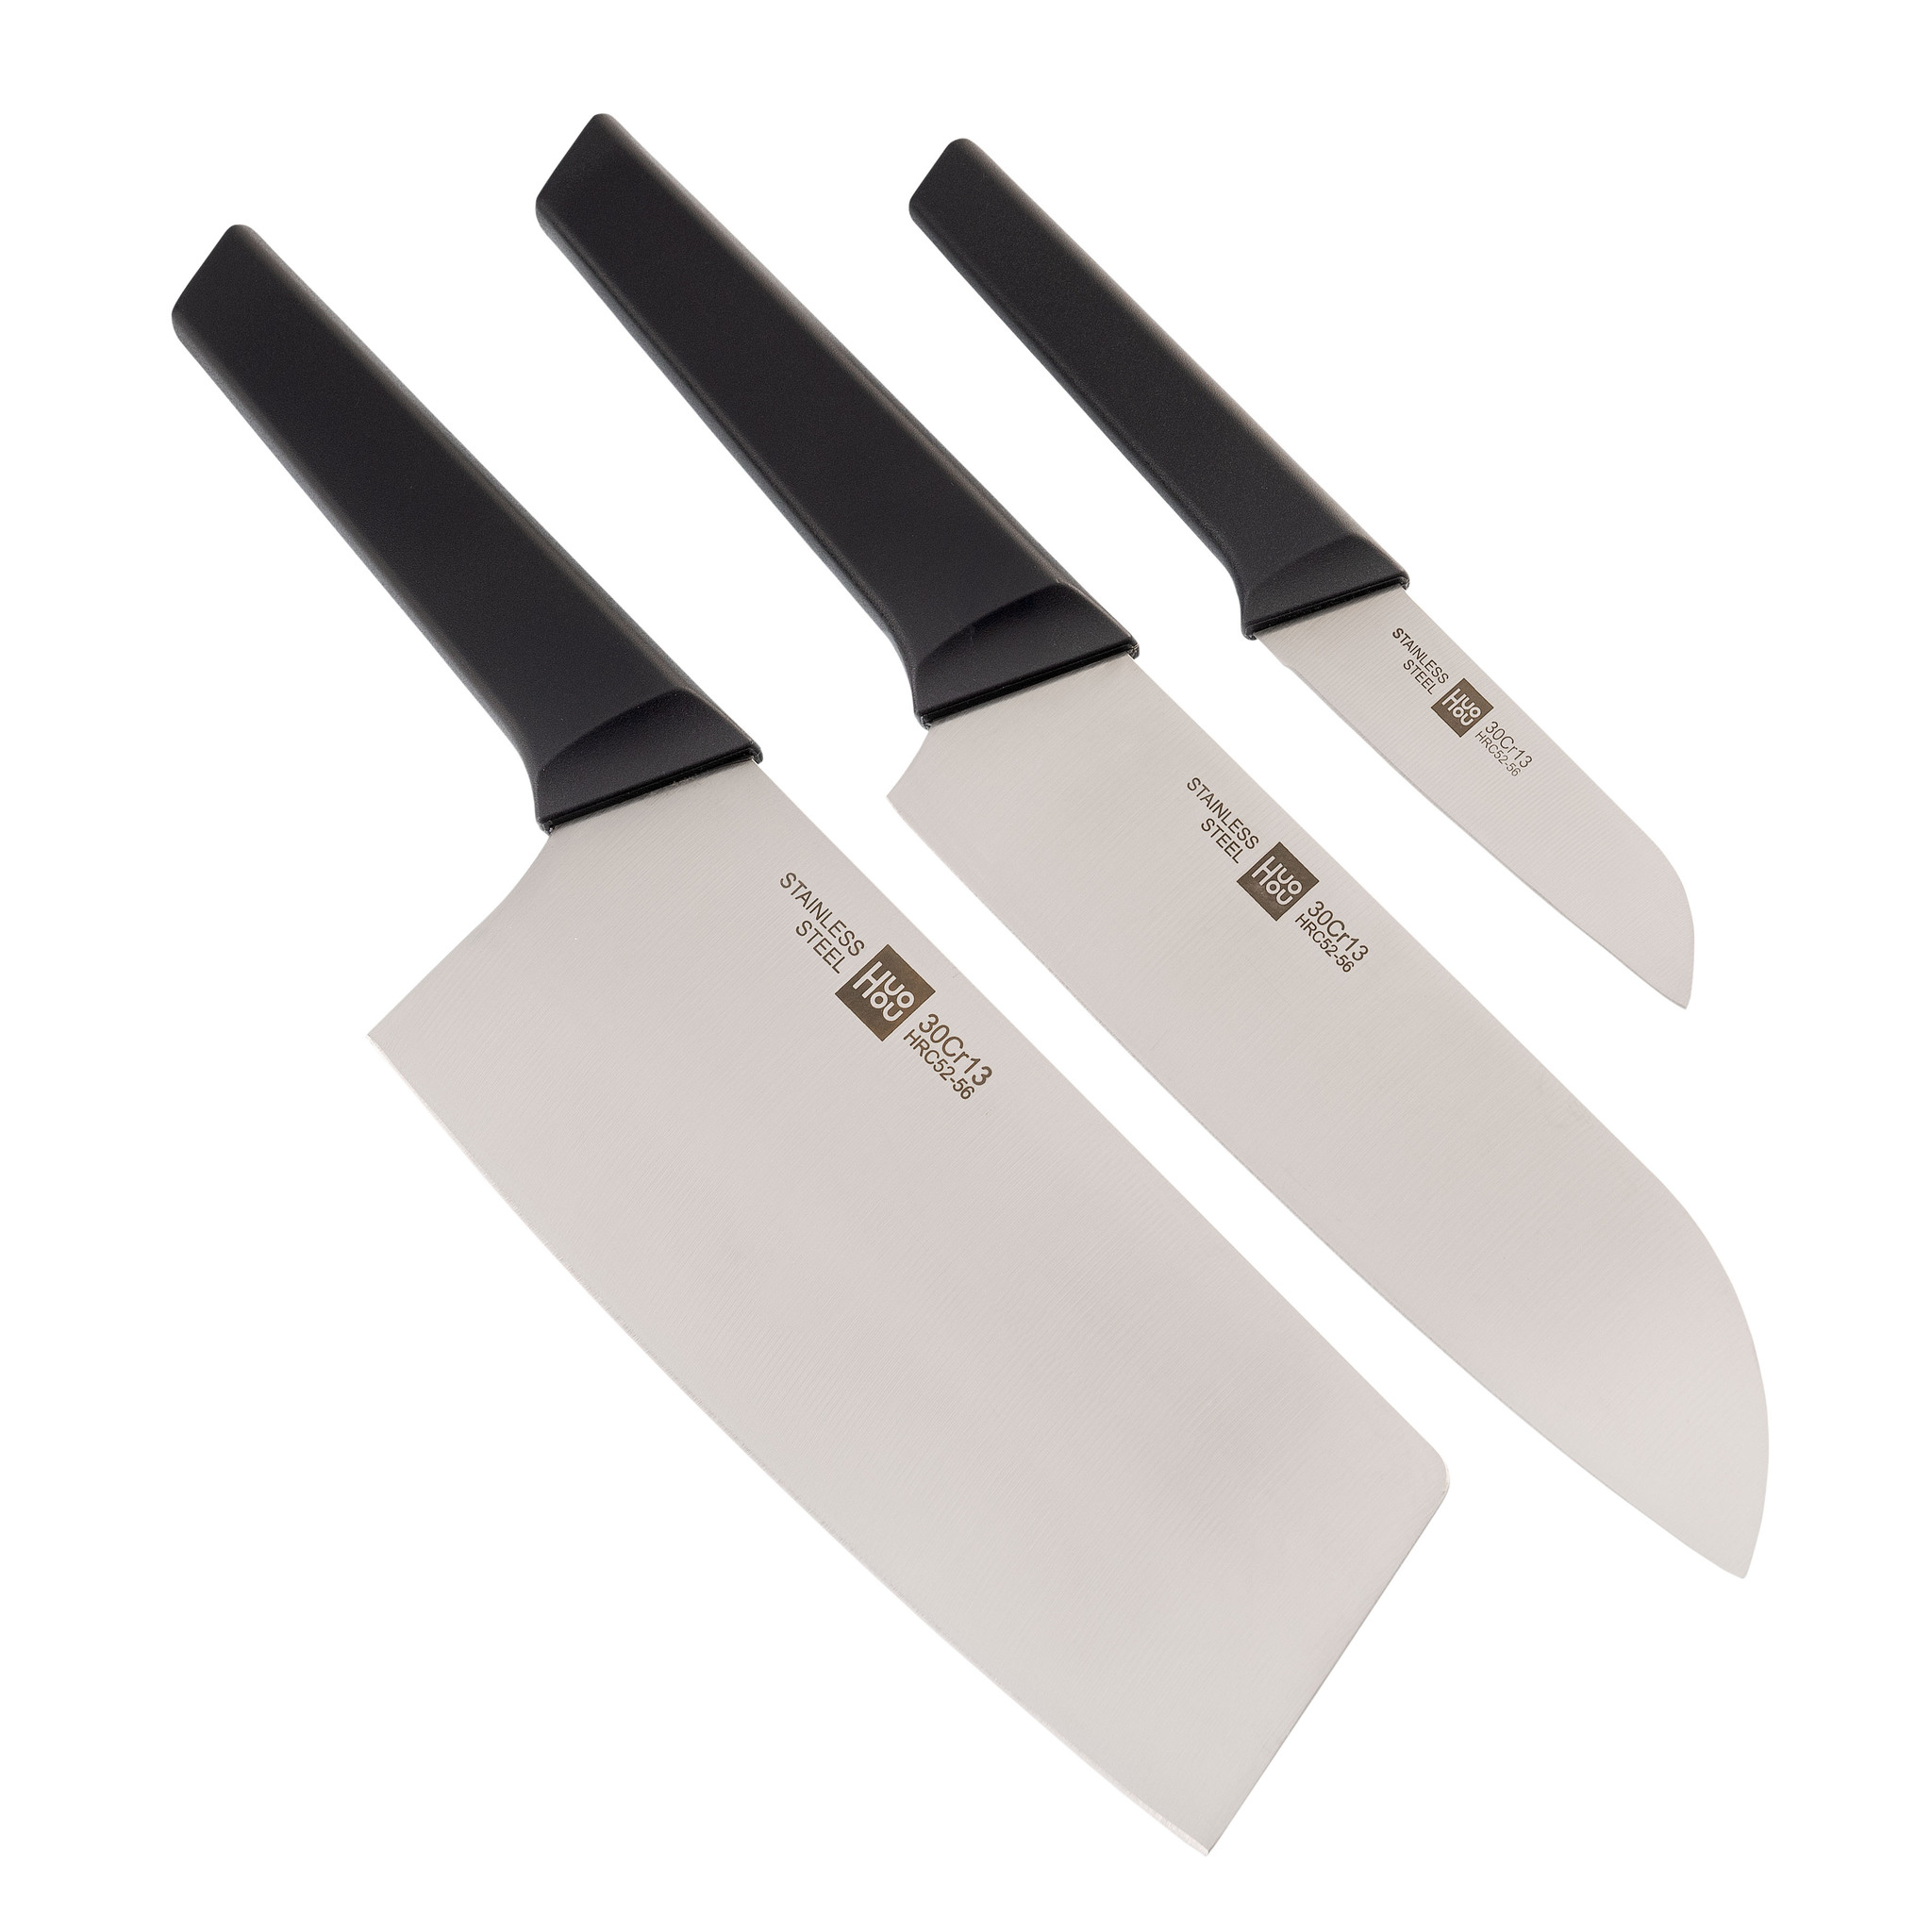 фото Набор кухонных ножей на подставке xiaomi huohou 4-piece kitchen knife set lite